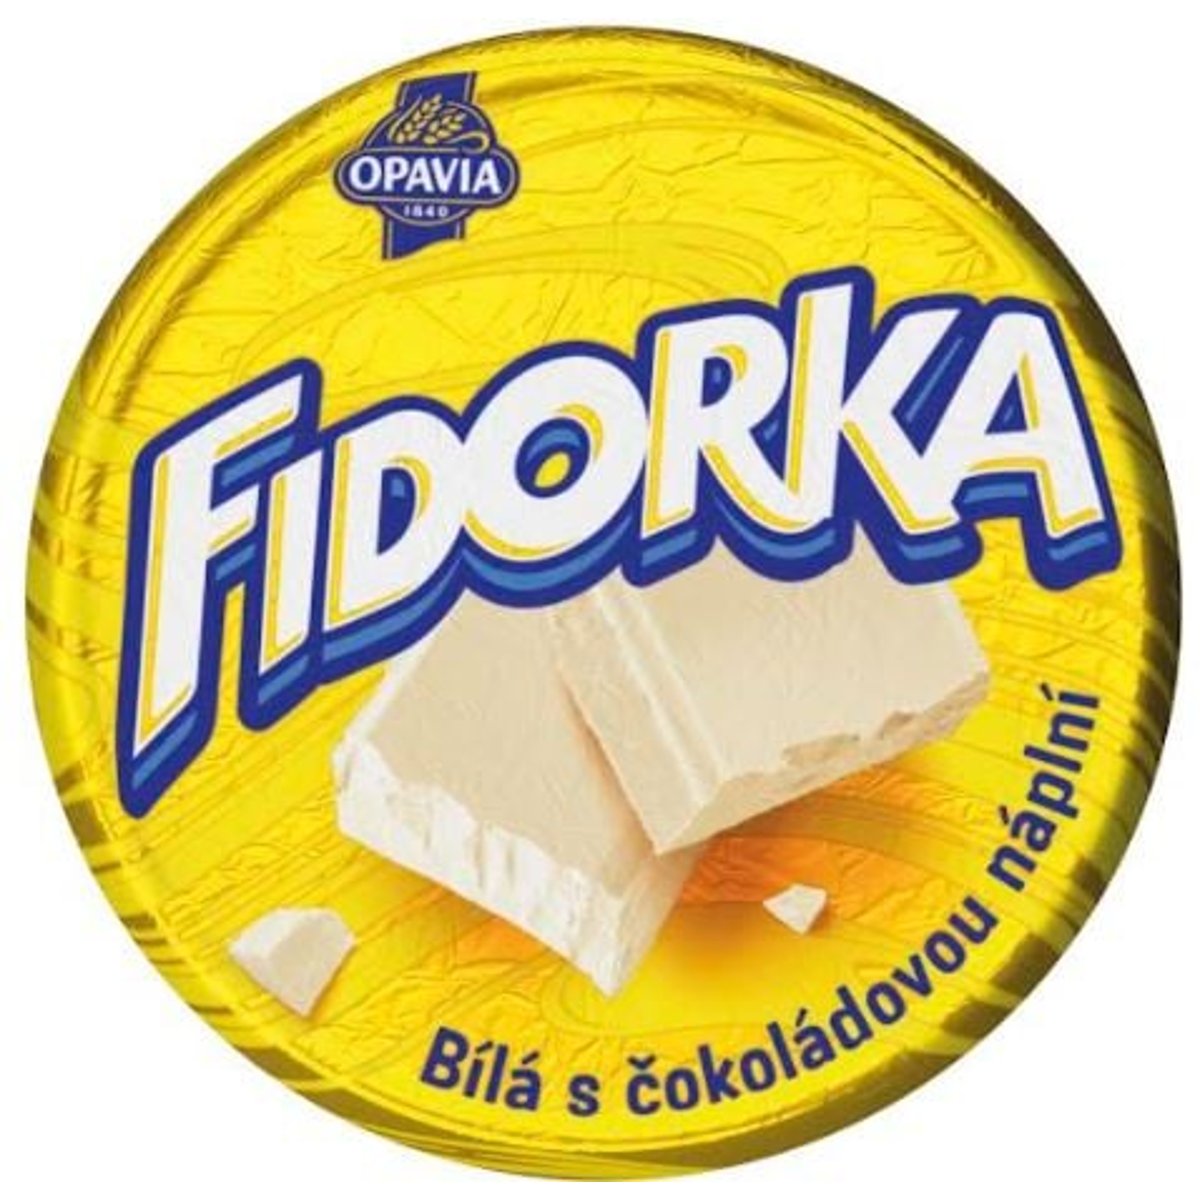 Opavia Fidorka Bílá s čokoládovou náplní žlutá